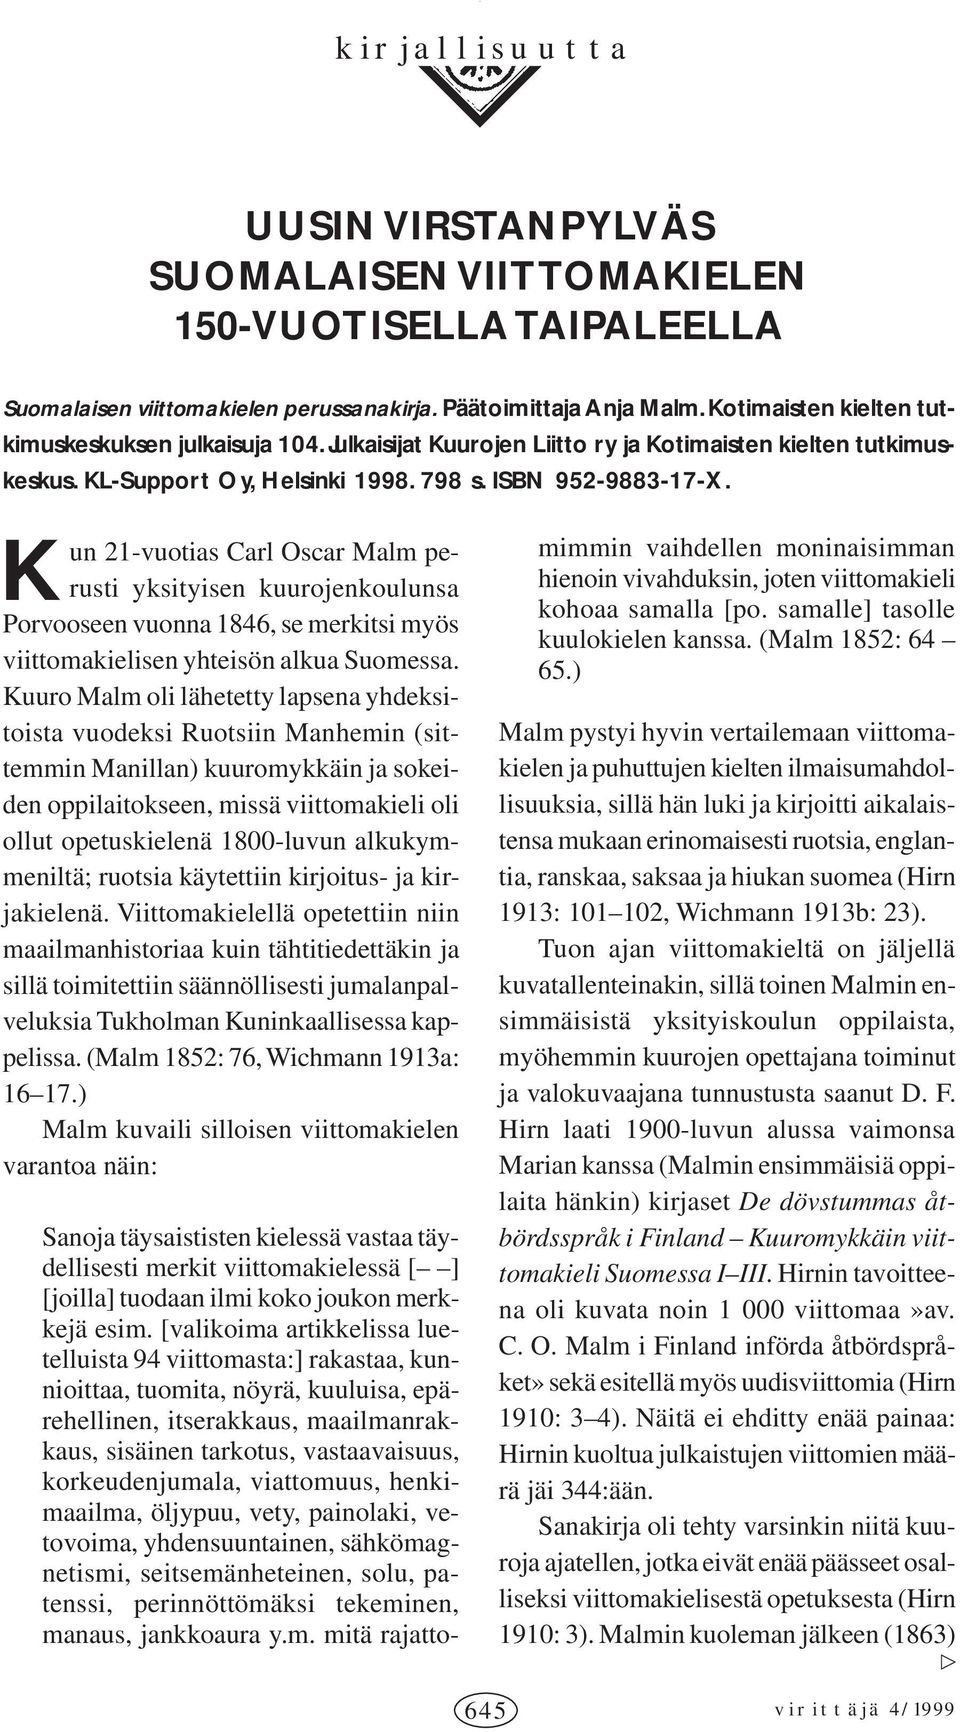 K un 21-vuotias Carl Oscar Malm perusti yksityisen kuurojenkoulunsa Porvooseen vuonna 1846, se merkitsi myös viittomakielisen yhteisön alkua Suomessa.